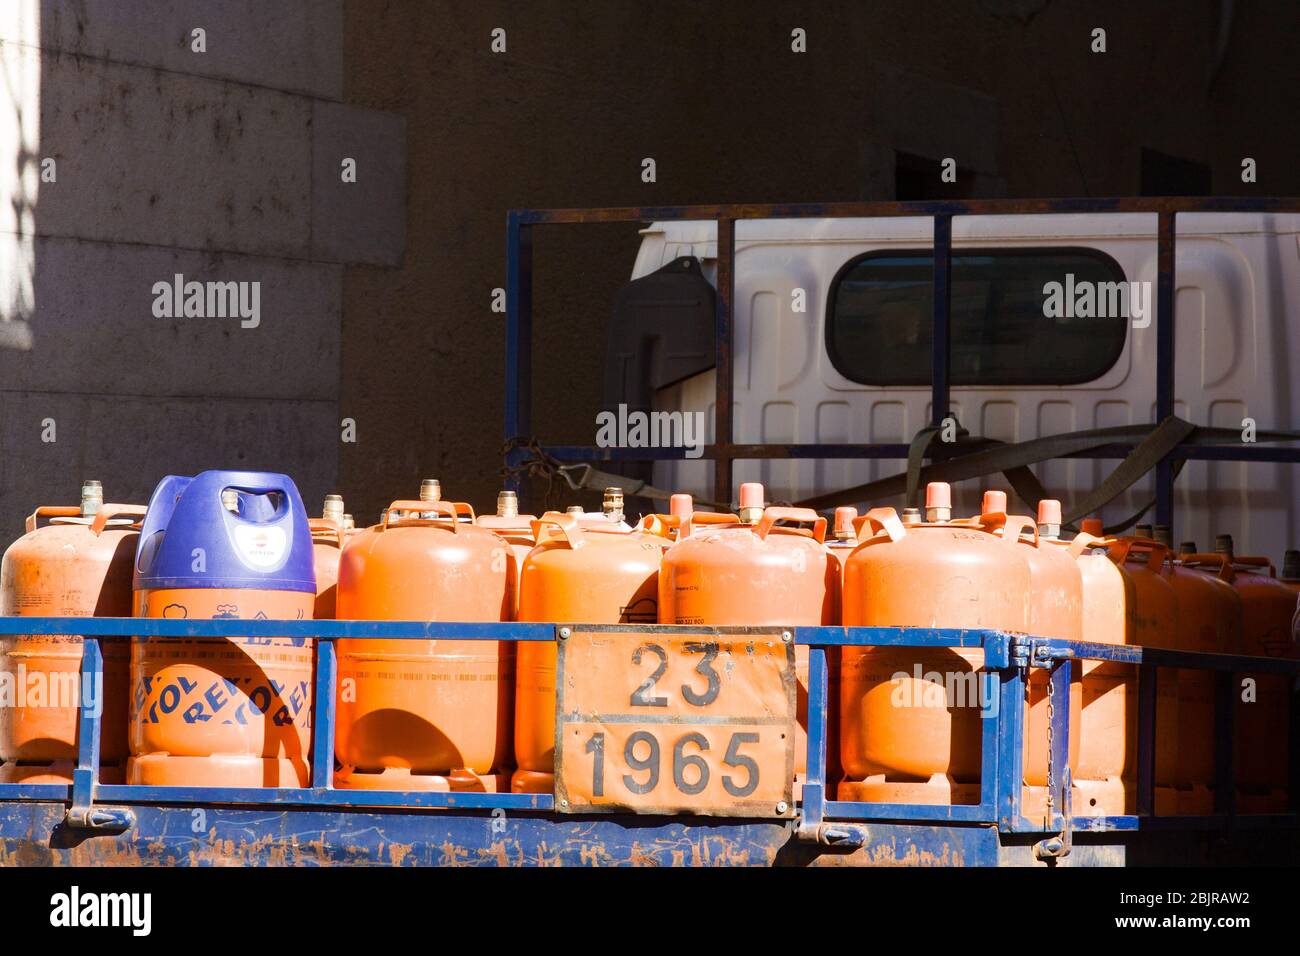 Girona, Spanien - 24. Februar 2020: Orangene Gasflaschen für Kunden im offenen LKW. Lieferung von Gasflaschen in der Stadt. Echte Stadt lif Stockfoto